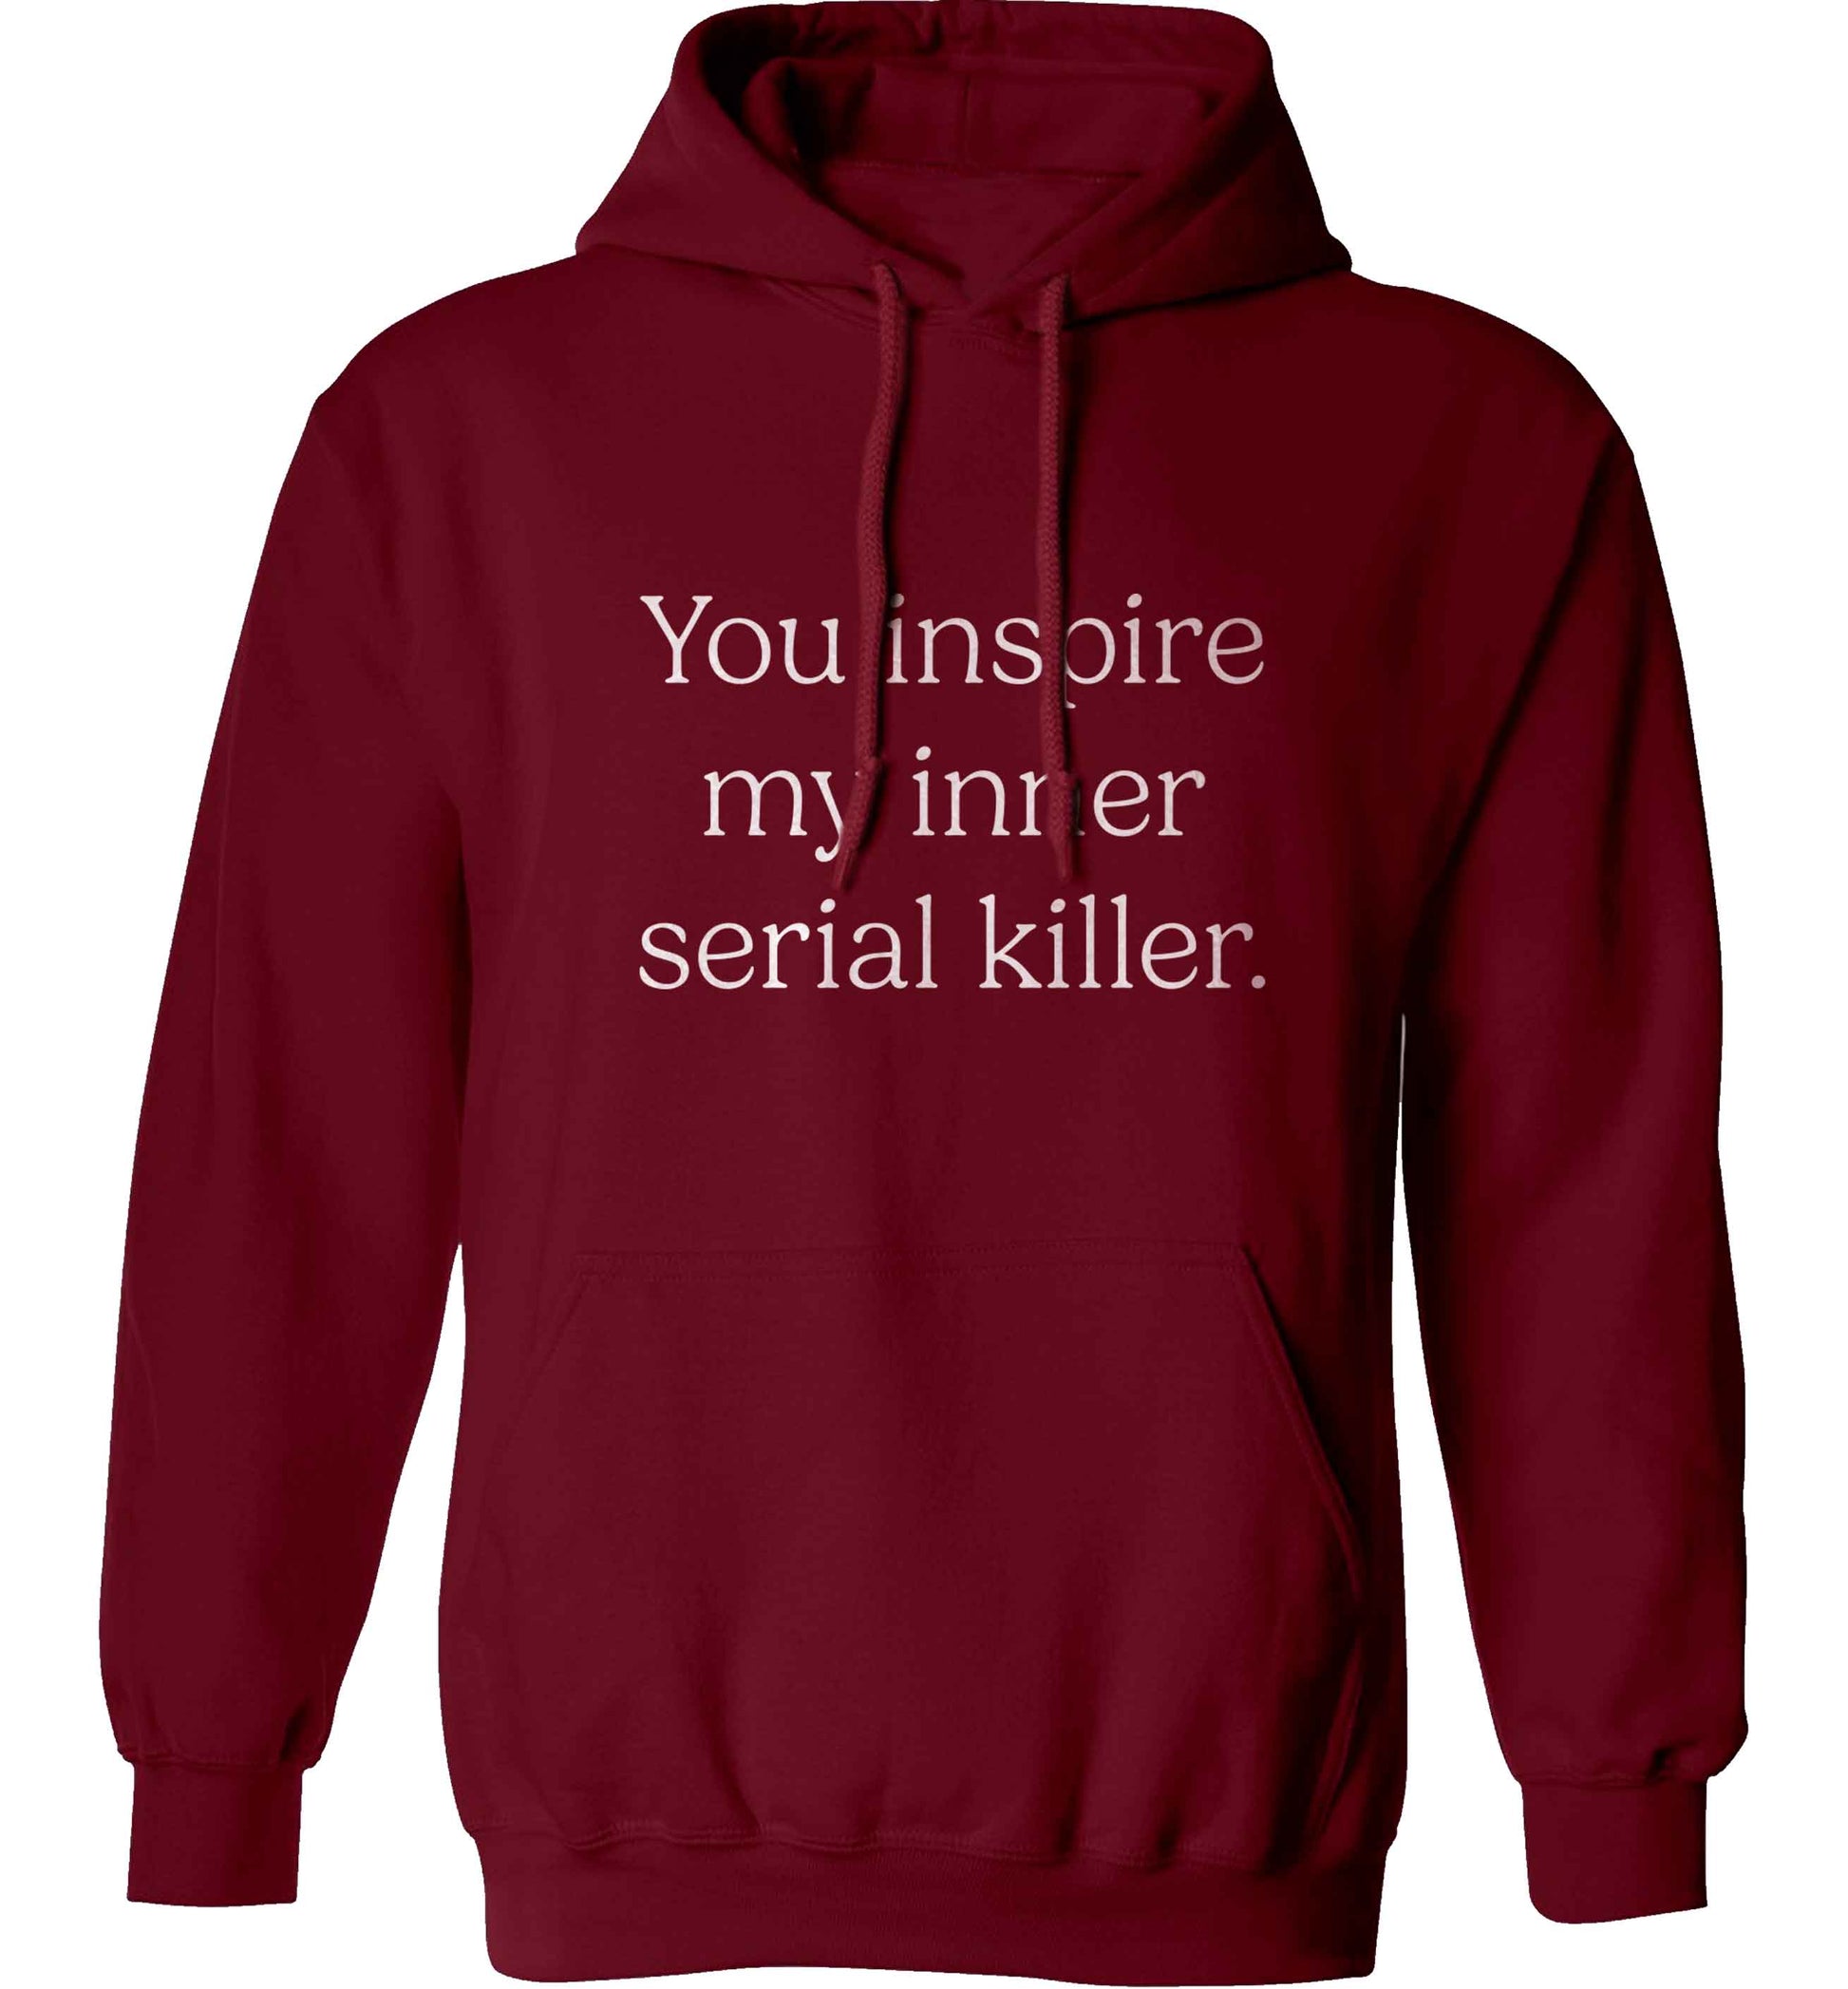 You inspire my inner serial killer Kit adults unisex maroon hoodie 2XL